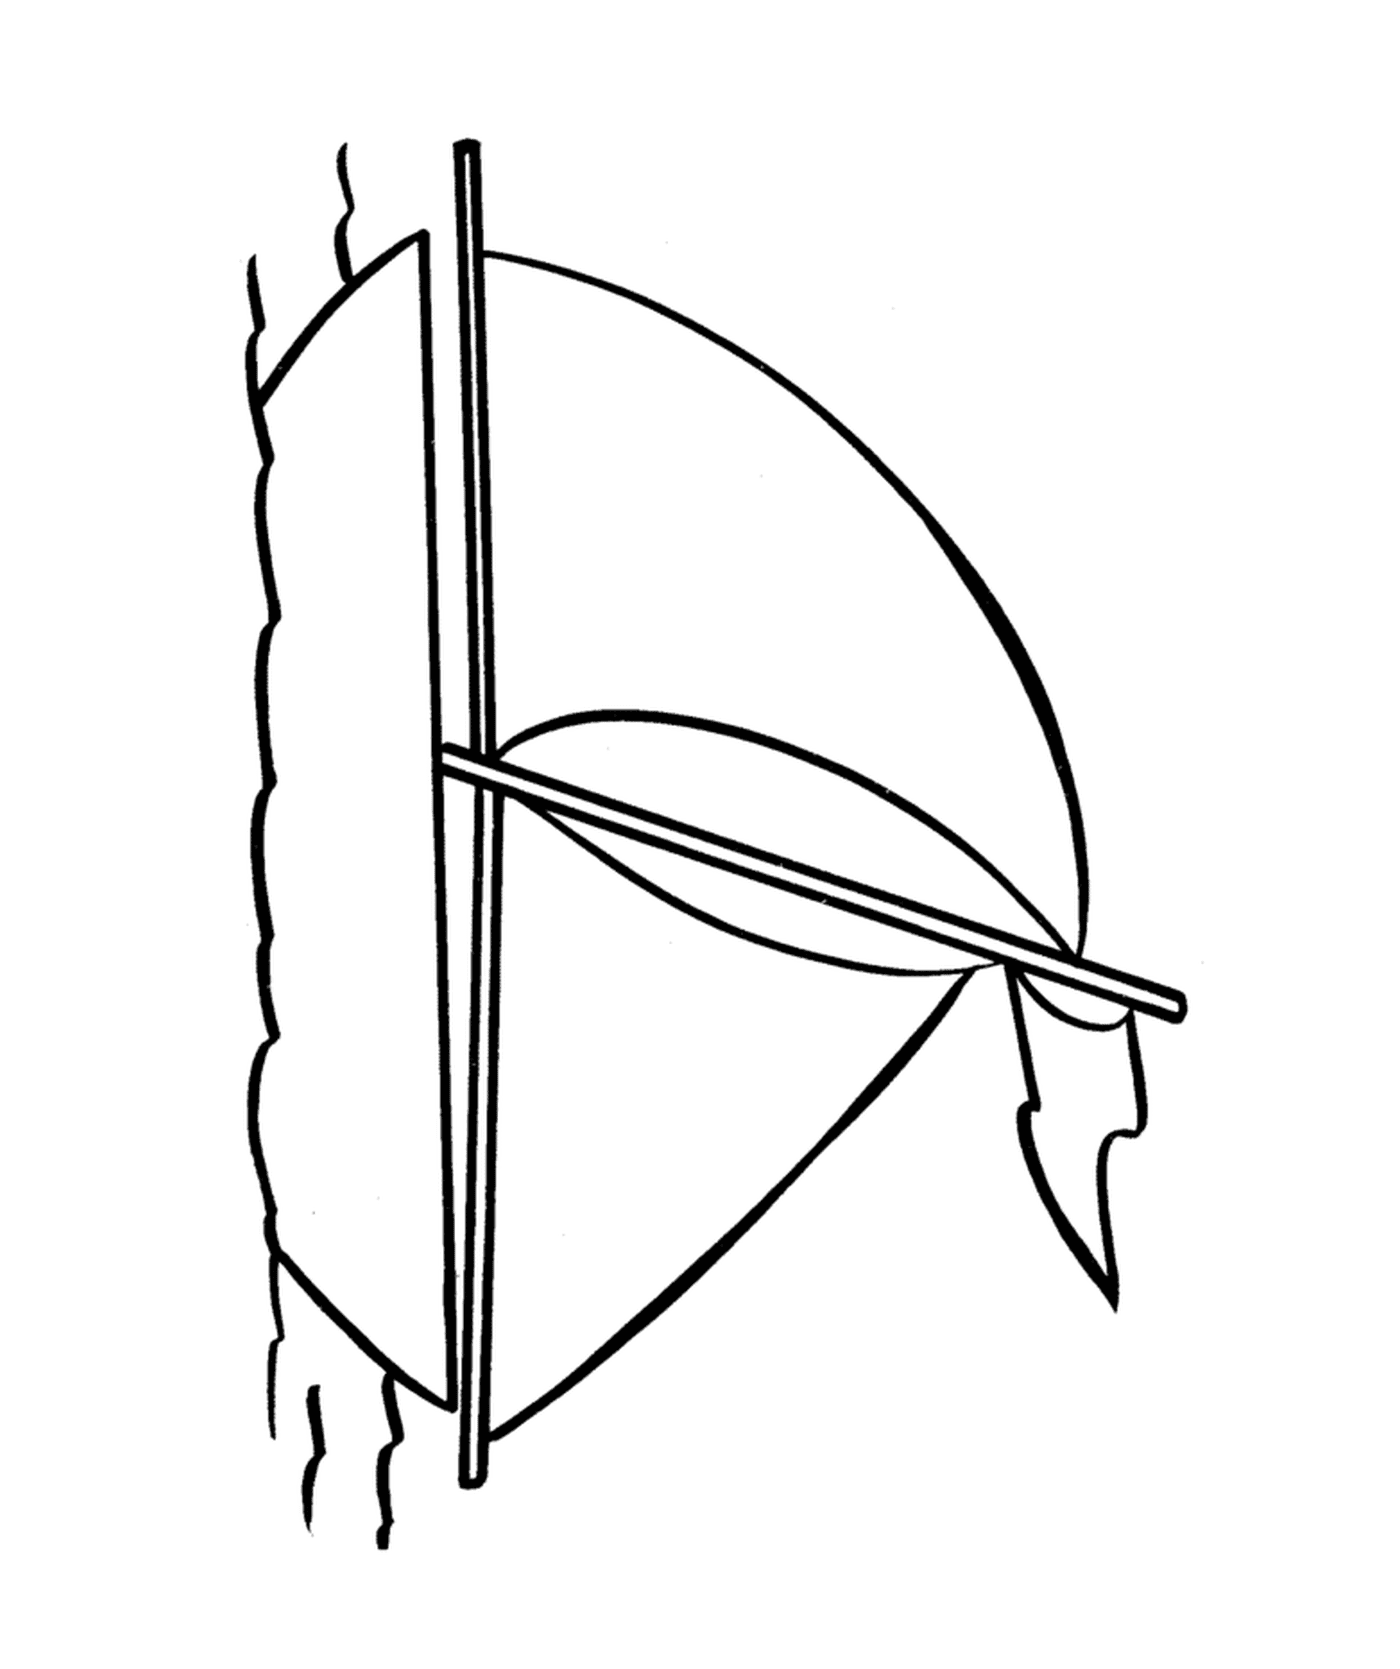  Un arco y una flecha 